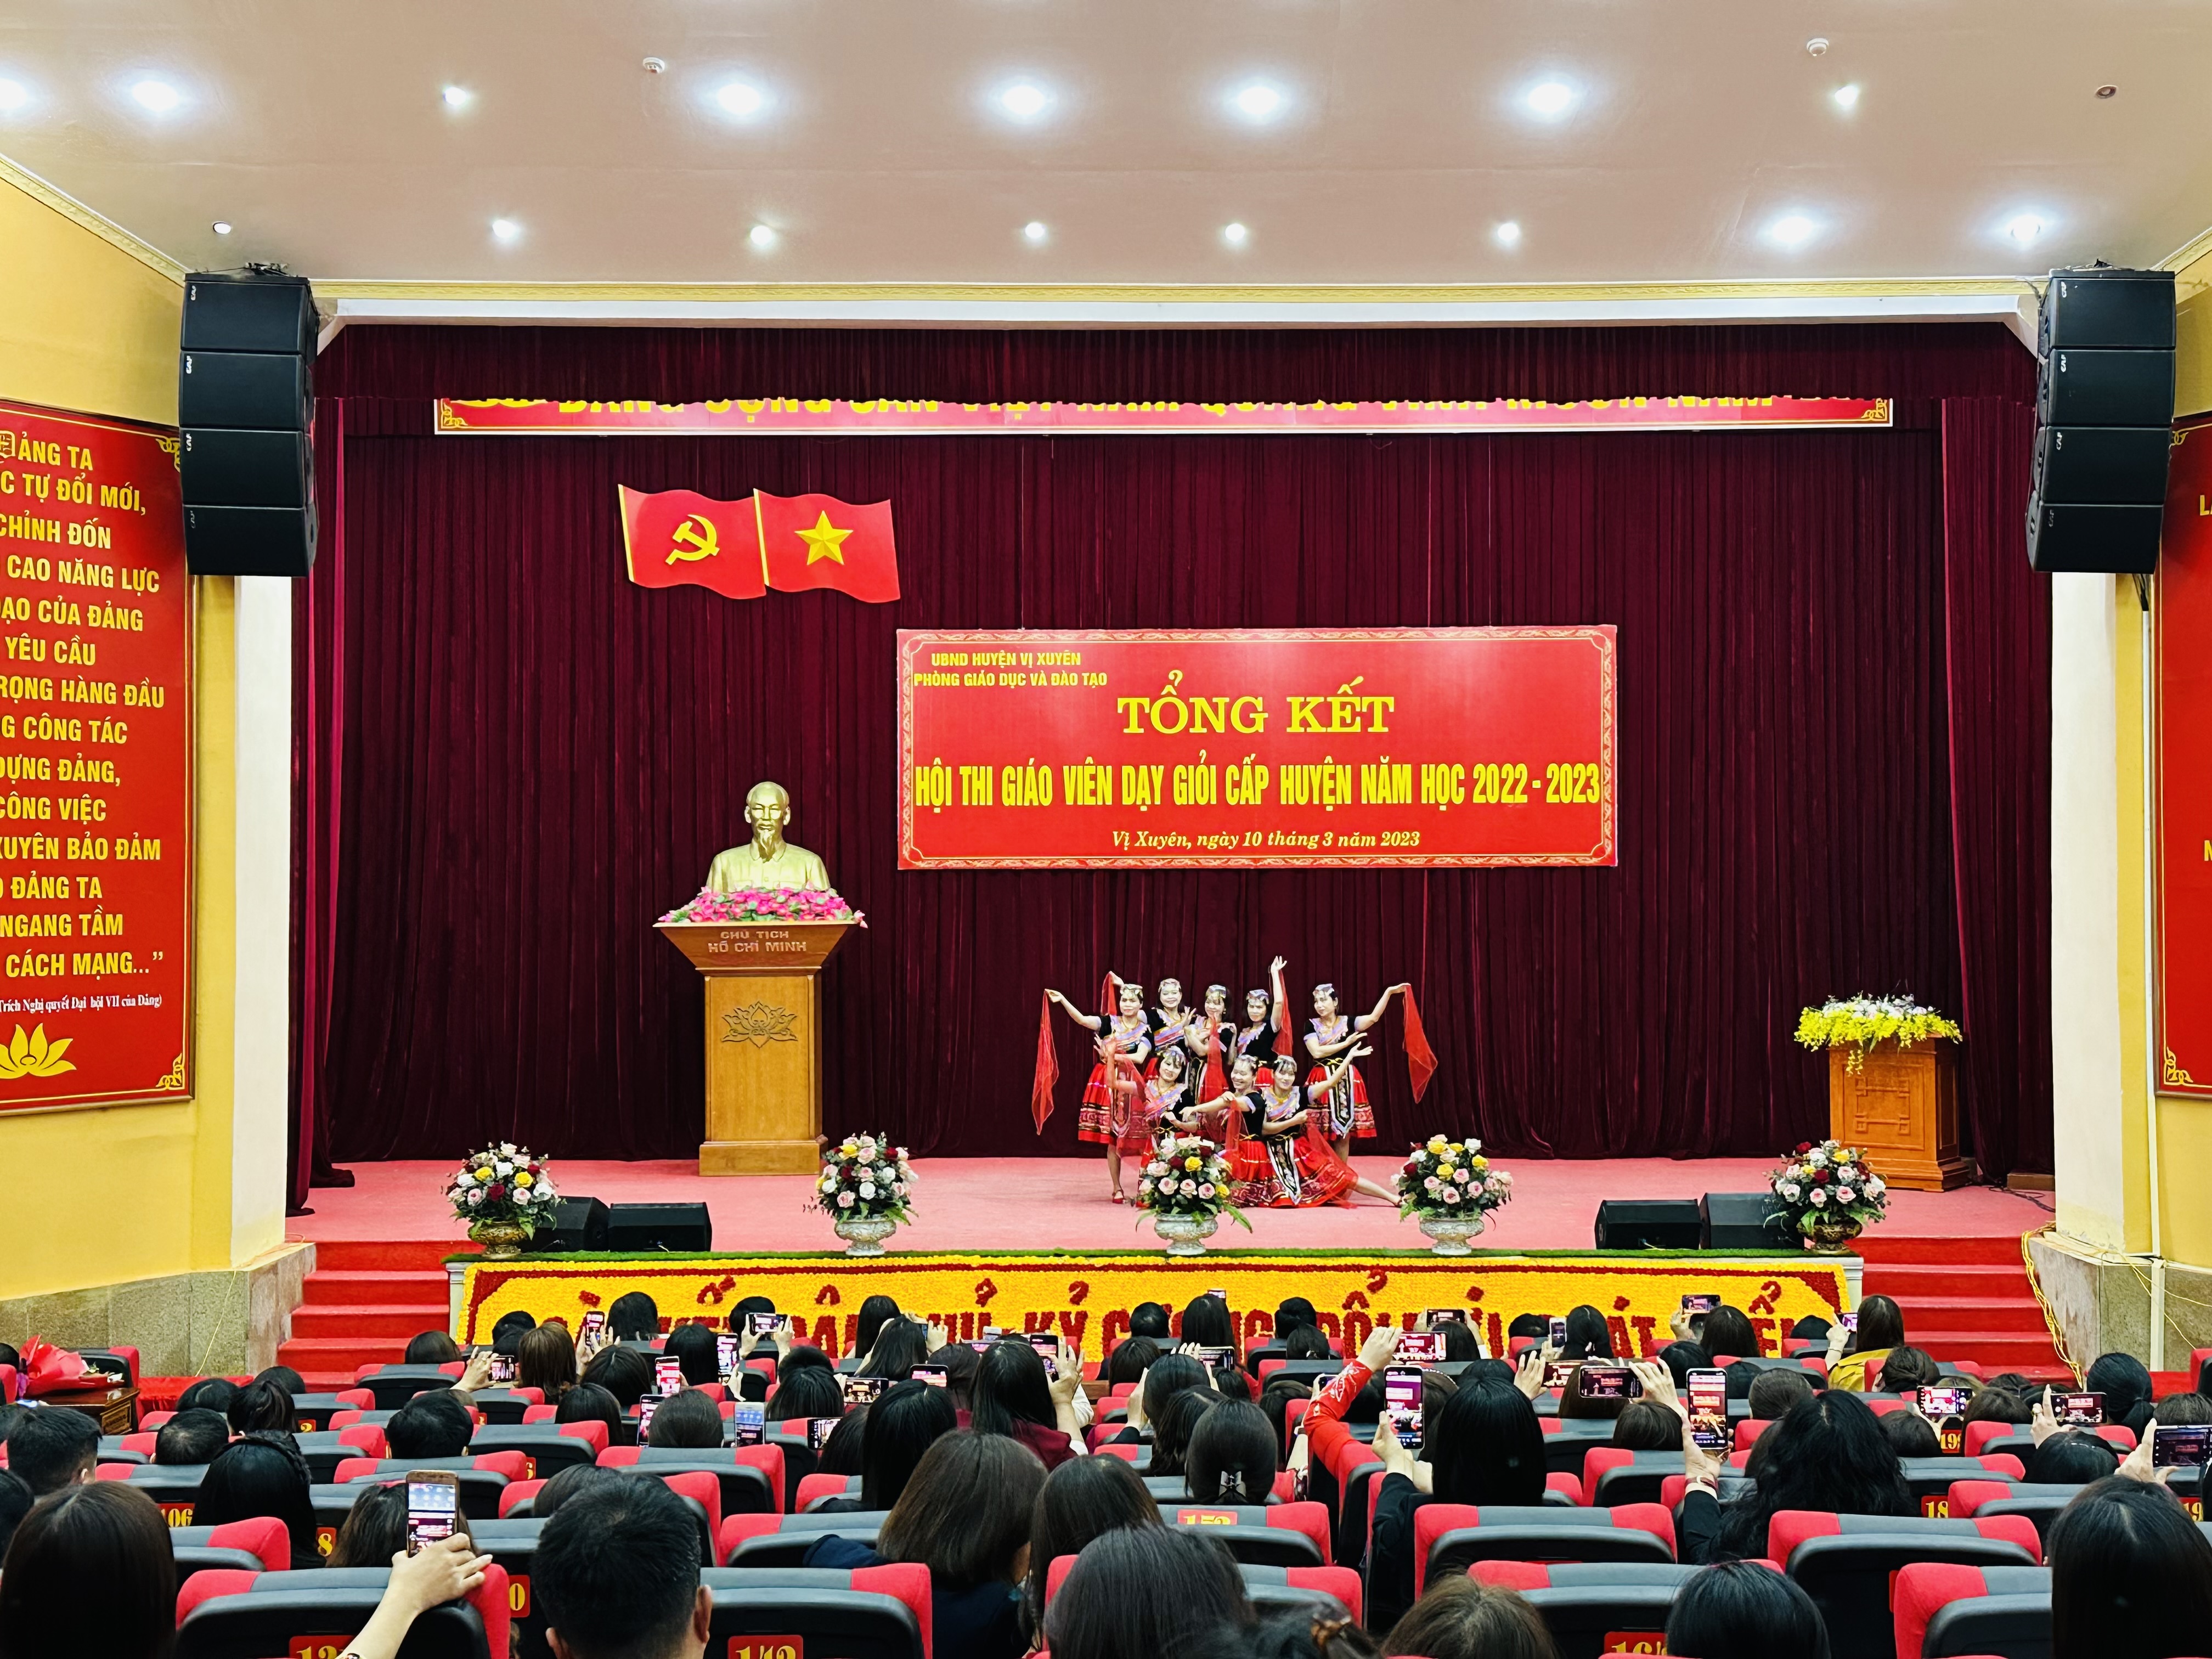 Vị Xuyên tổng kết Hội thi giáo viên giỏi cấp huyện 2022 – 2023